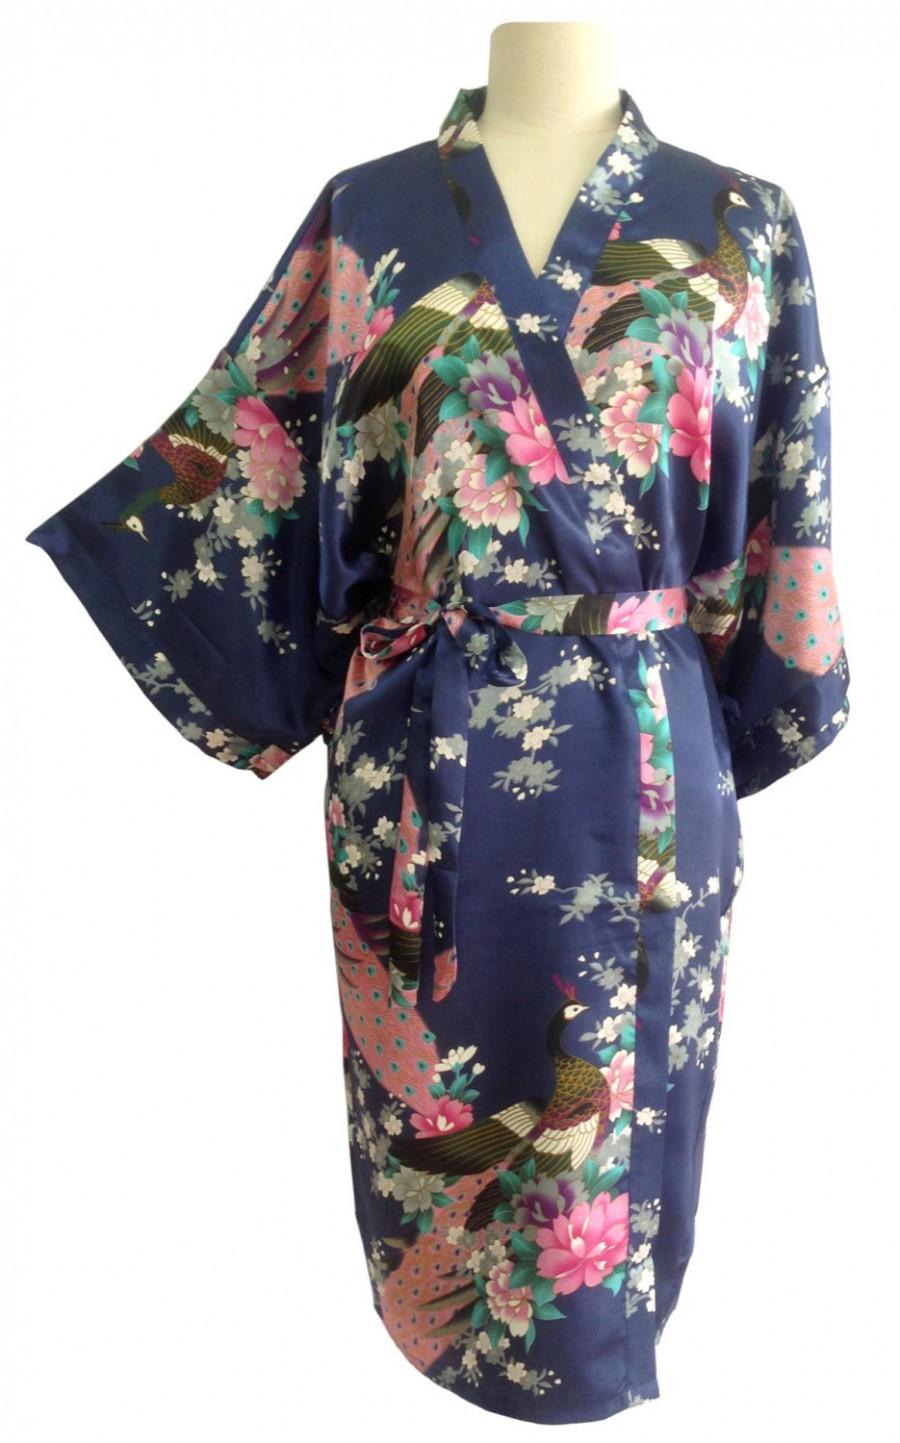 زفاف - Kimono Robes Bridesmaids Silk Satin Navy Blue Colour Paint Peacock Design Pattern Gift Wedding dress for Party Free Size